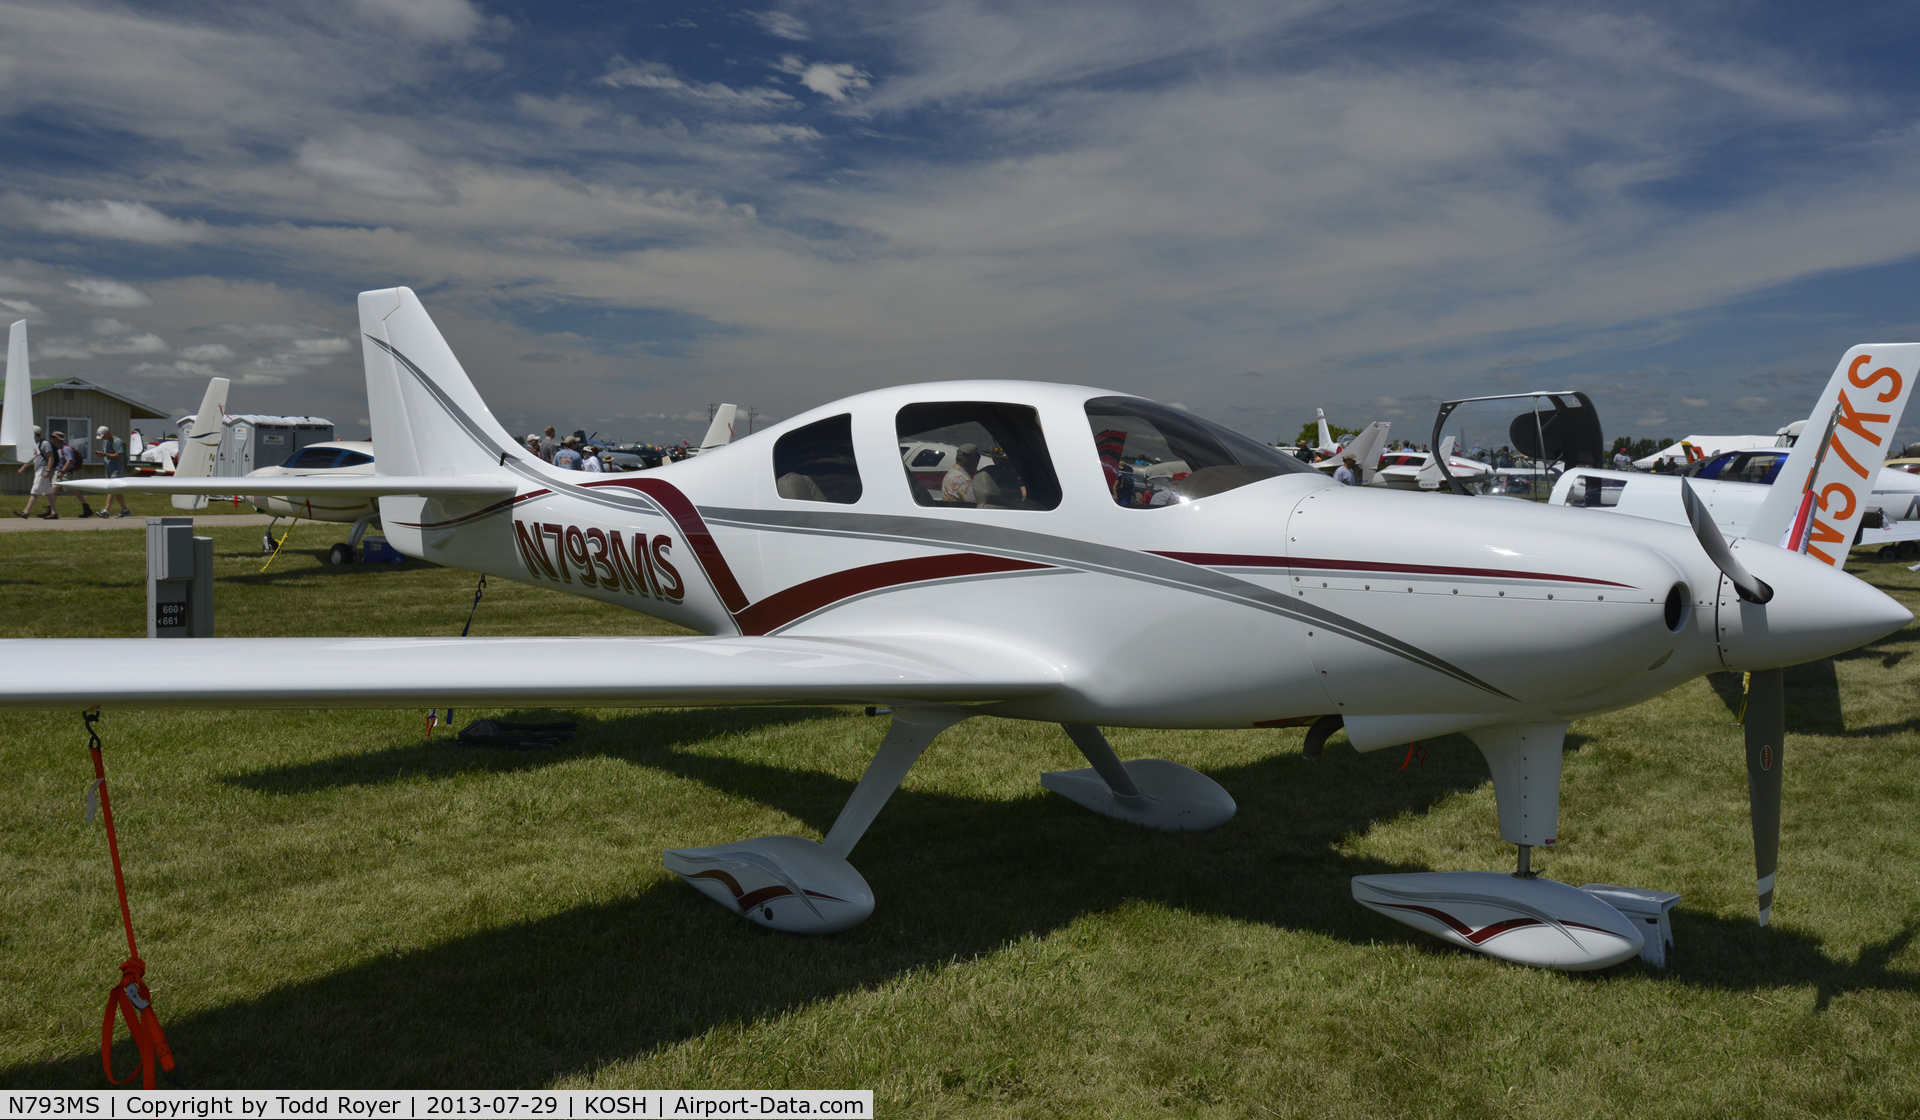 N793MS, Lancair Super ES C/N ES-075, Airventure 2013